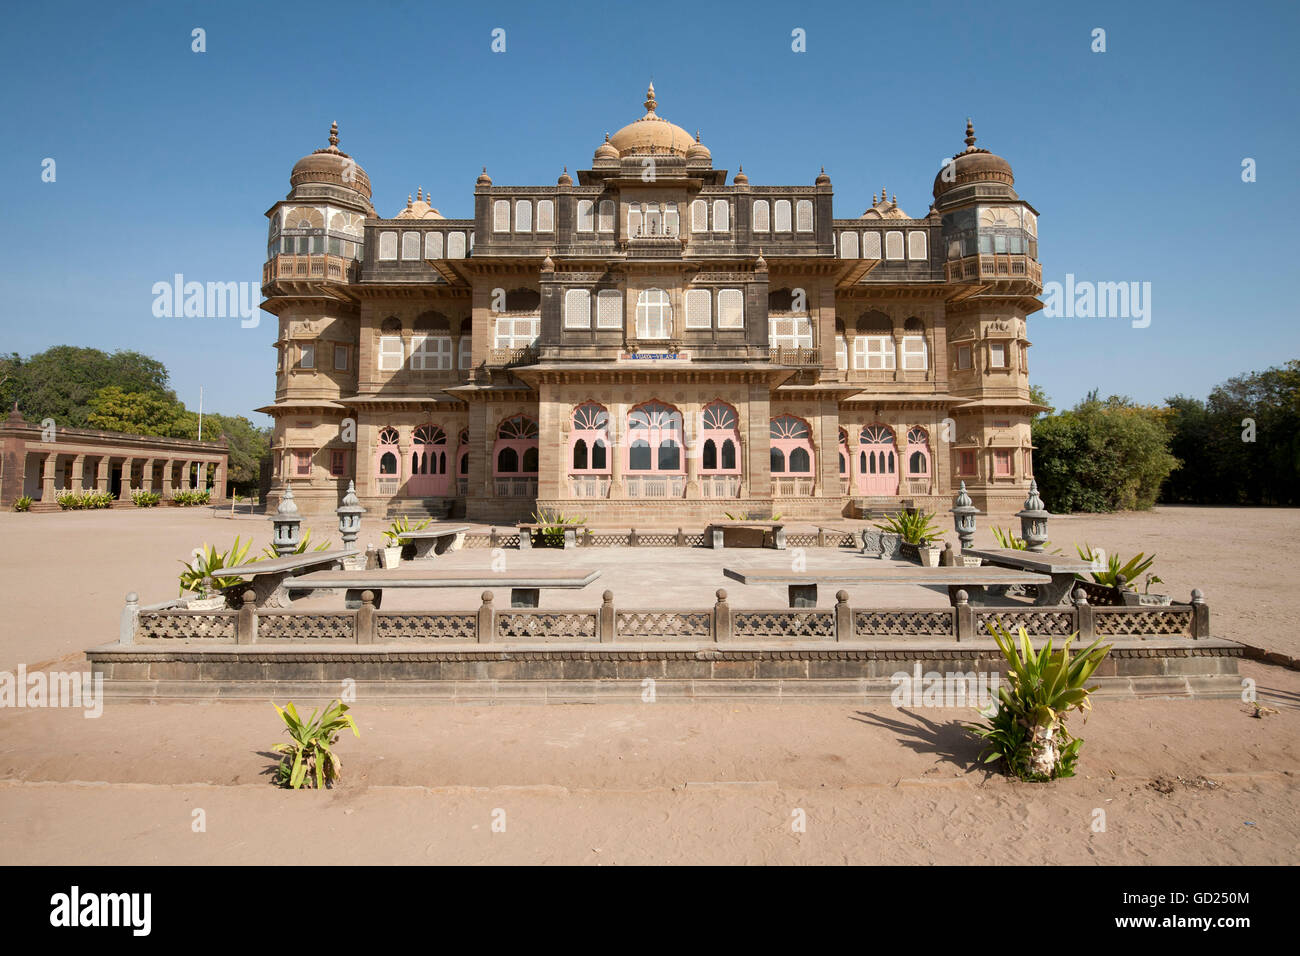 Vijay Vilas Palace, construit à partir de grès rouge pour le Maharao de Kutch au cours des années 1920, Mandvi, Gujarat, Inde, Asie Banque D'Images